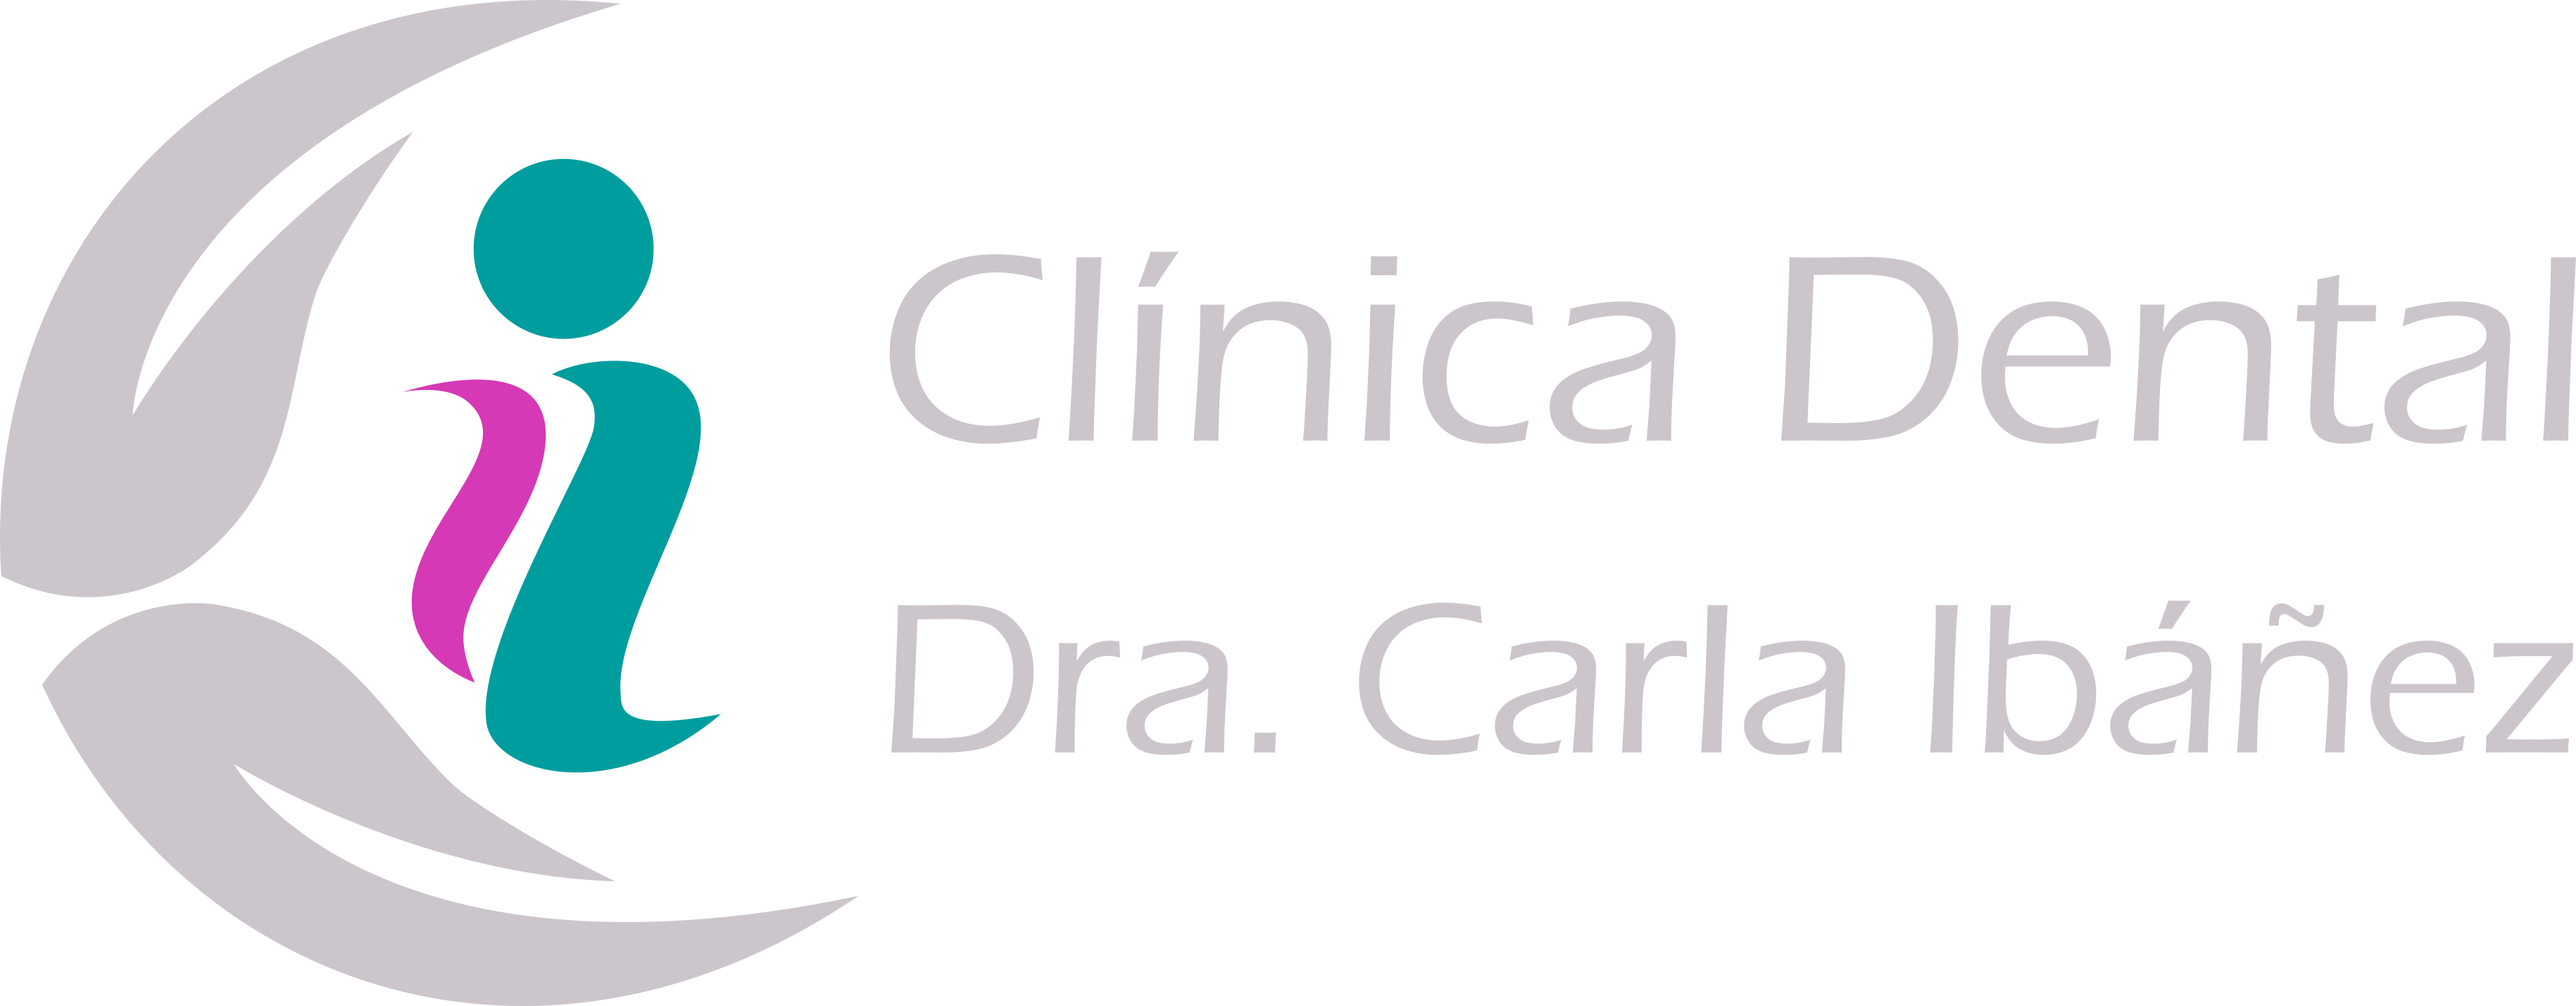 Clínica Dental Dra. Carla Ibañez